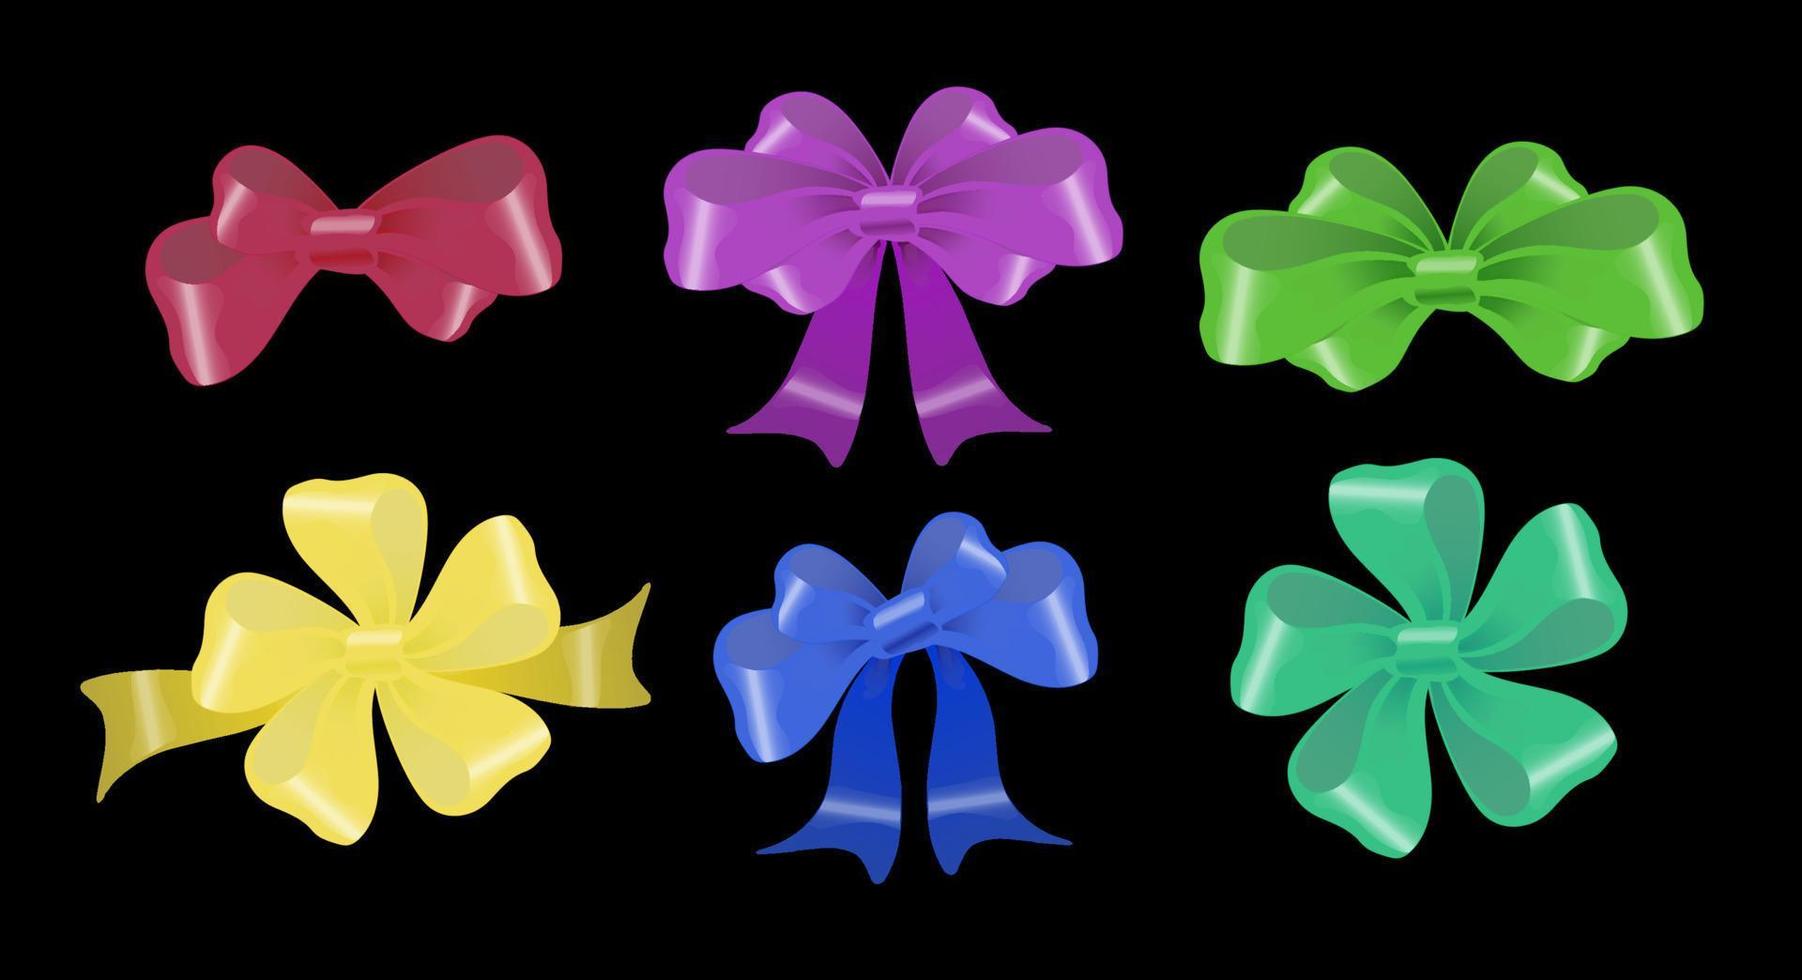 arcos multicolores decorativos de varias formas vector